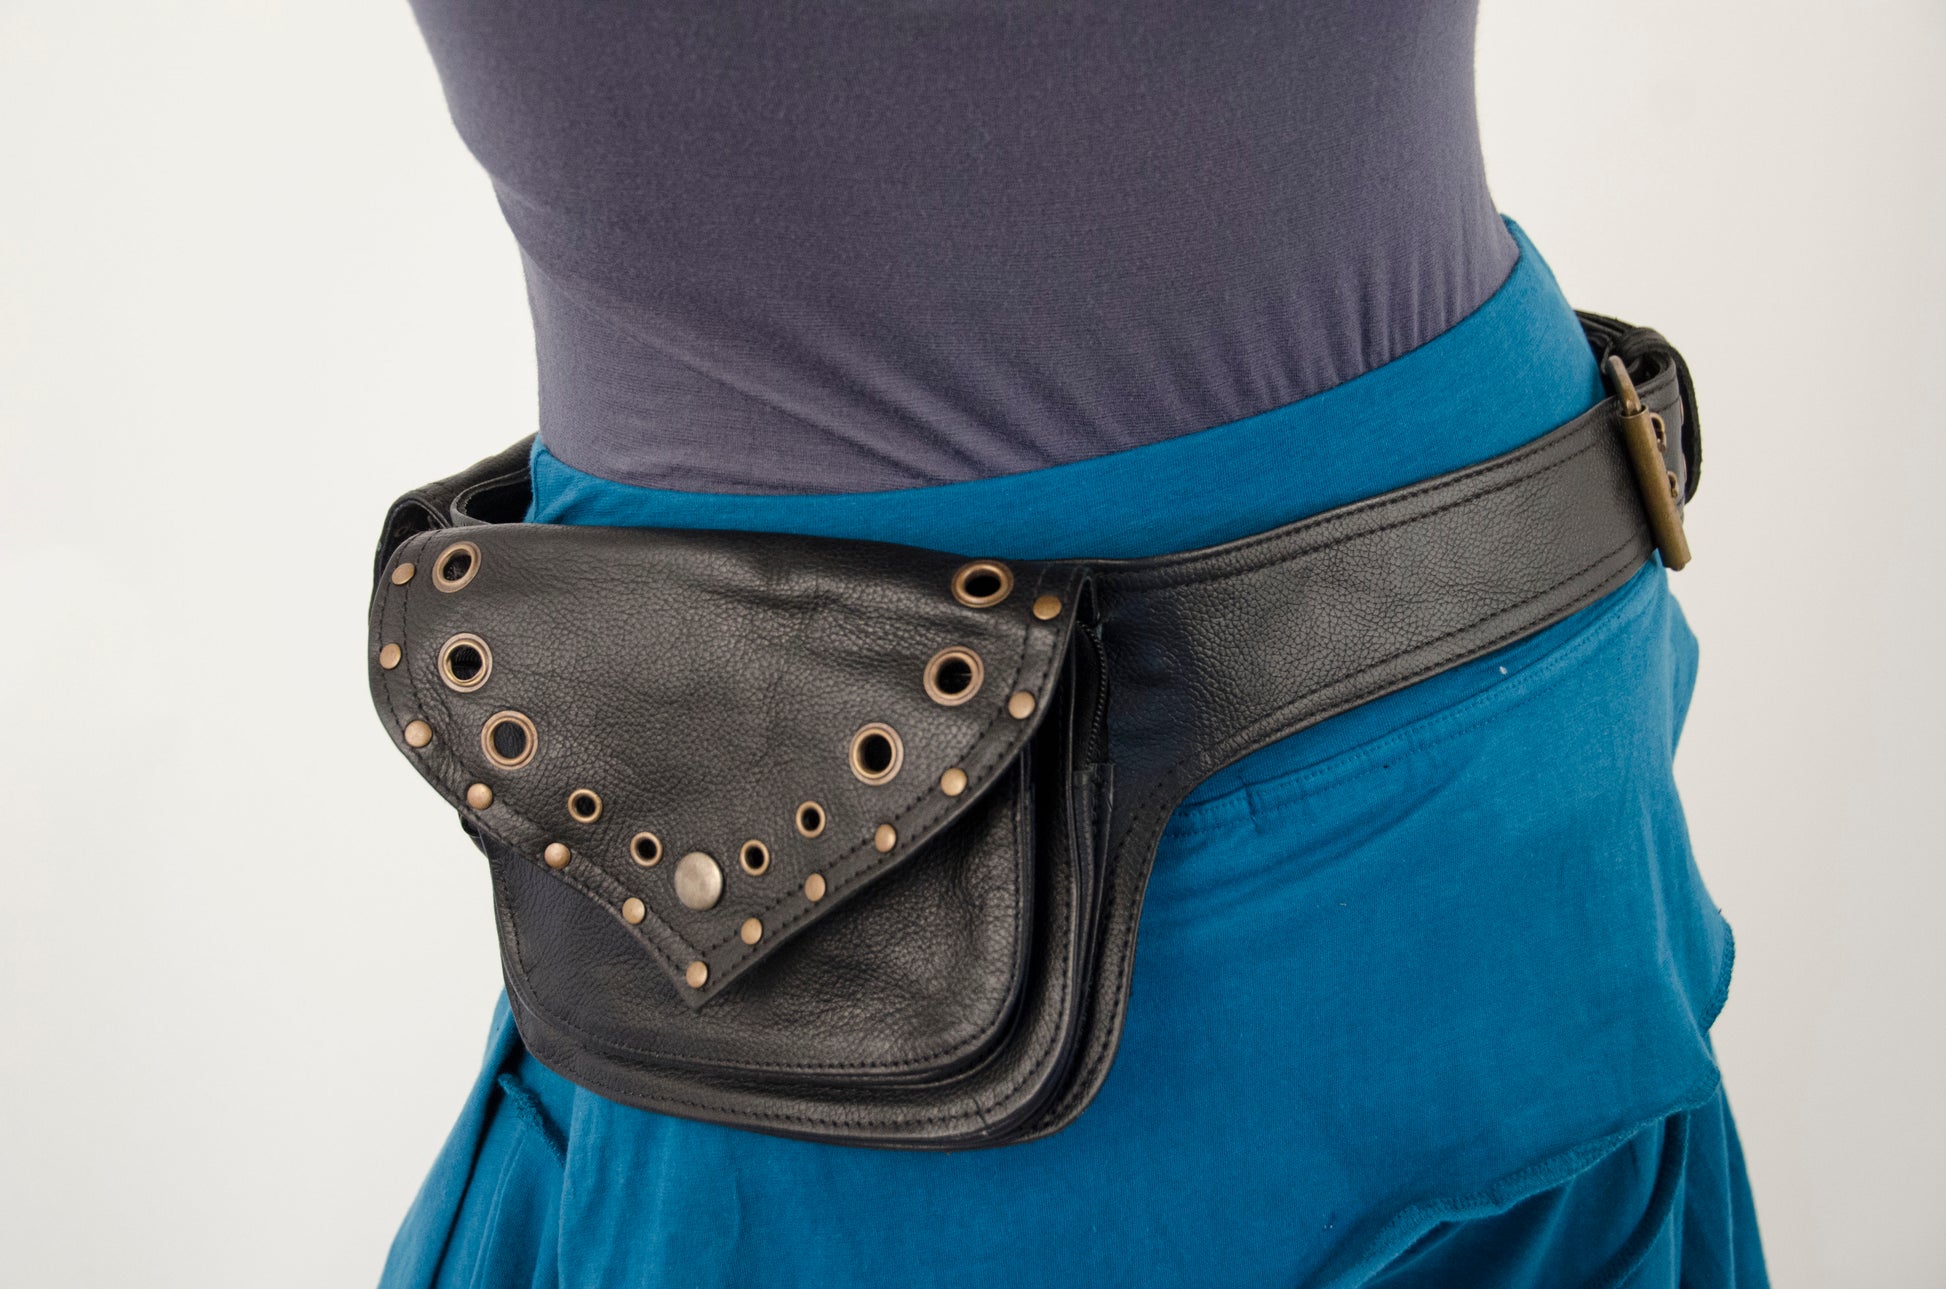 Leather Utility Belt Bag, Fanny Pack